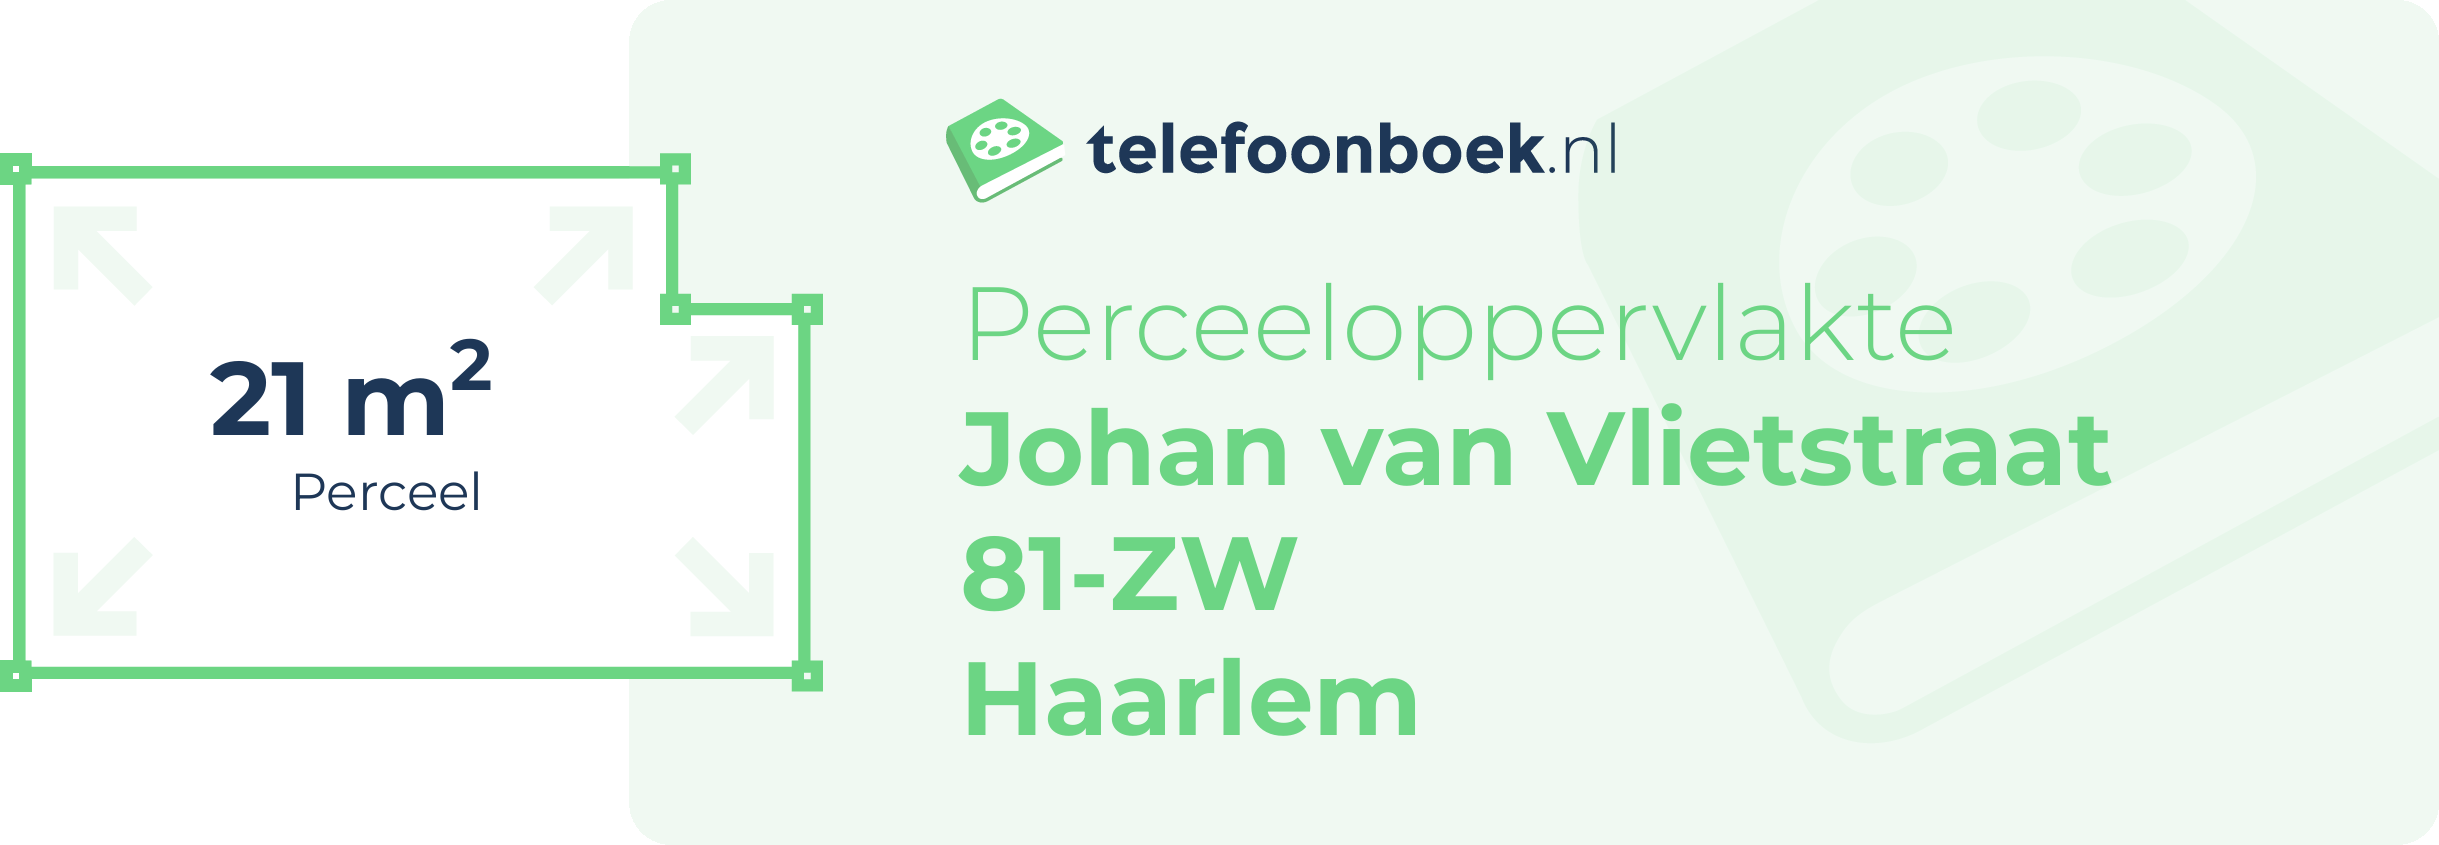 Perceeloppervlakte Johan Van Vlietstraat 81-ZW Haarlem